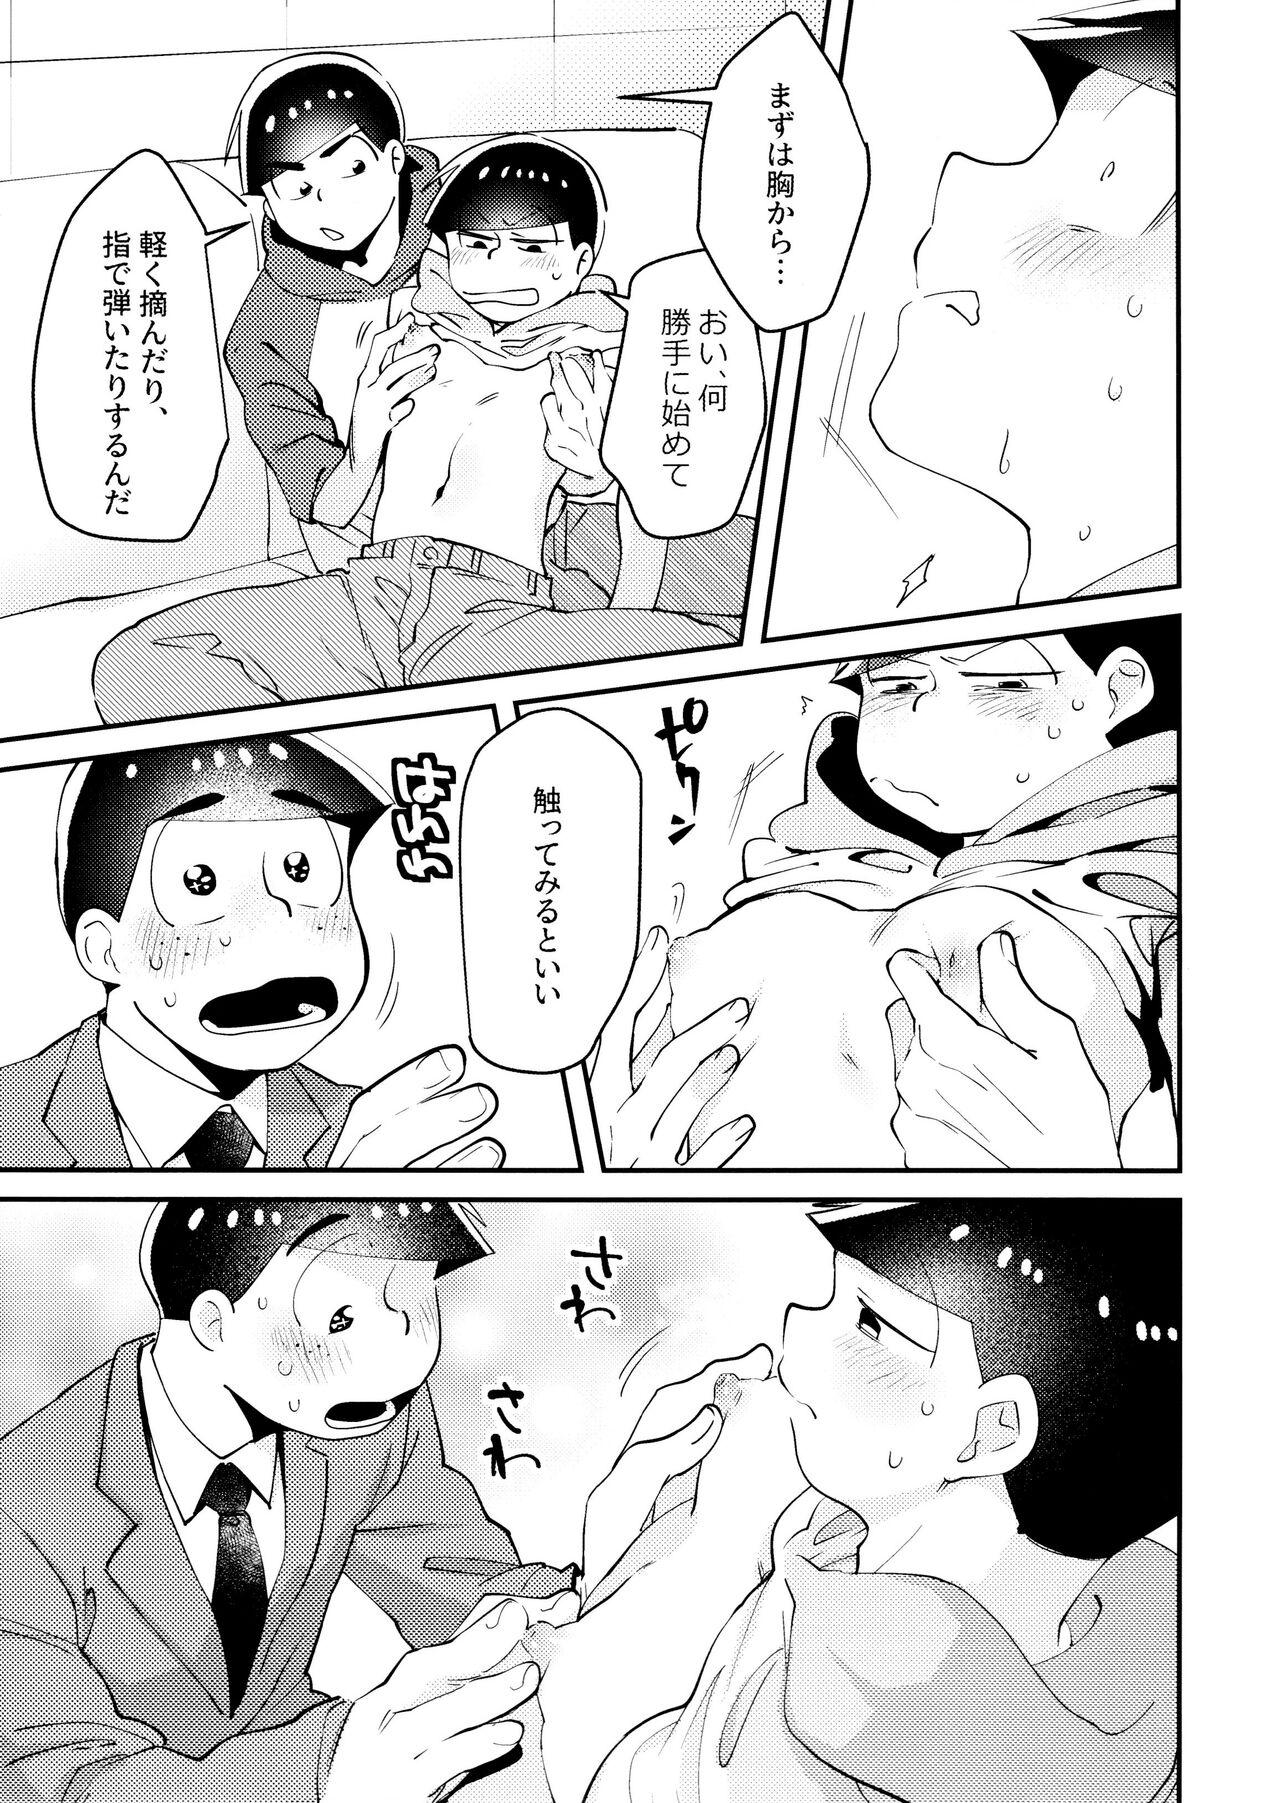 Mallu Cherry boy END - Osomatsu-san Cdmx - Page 8